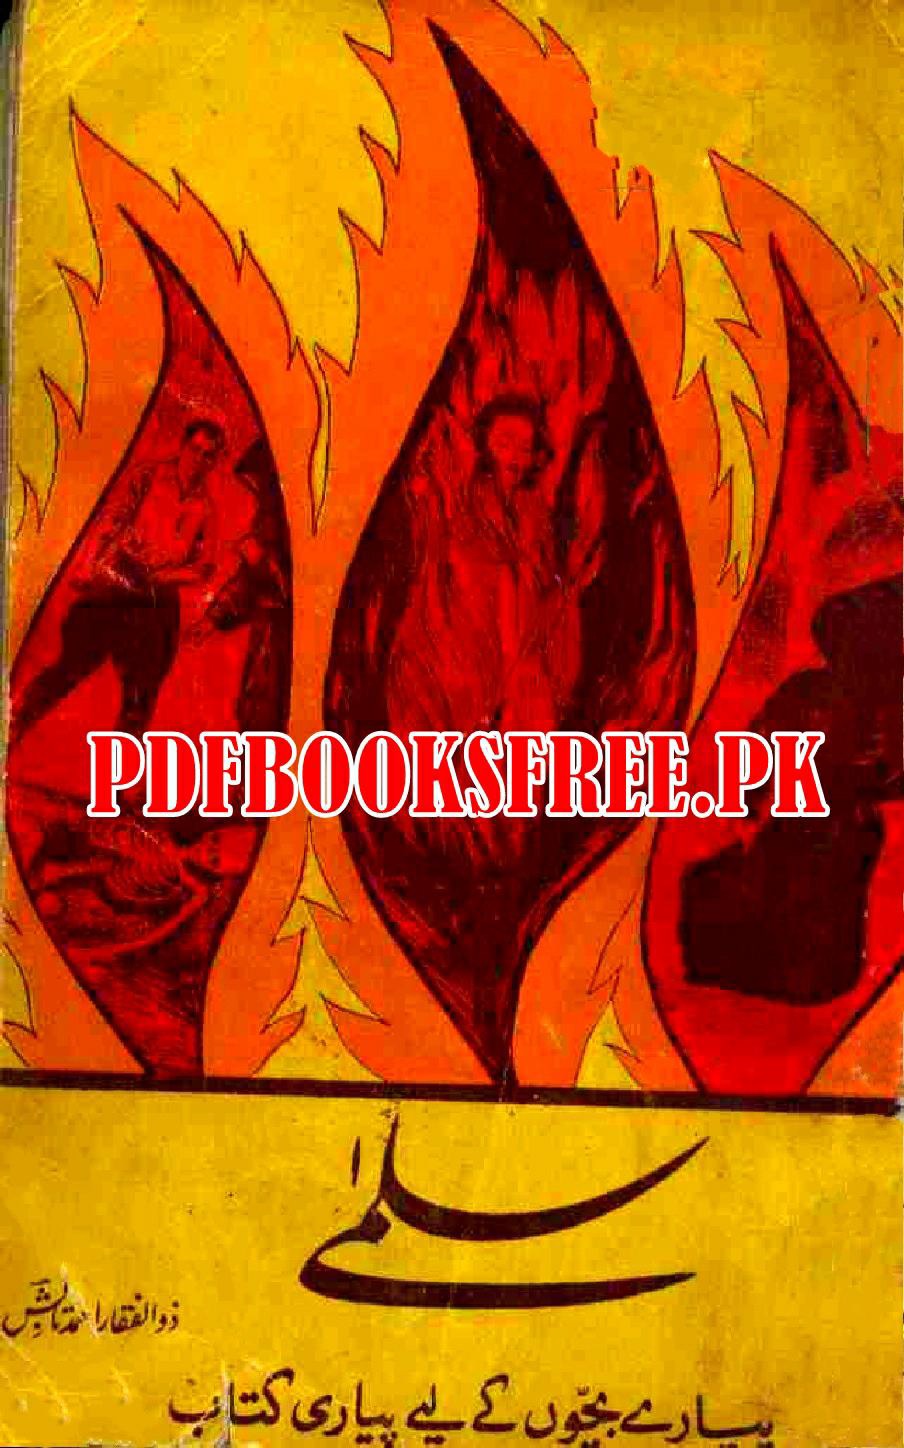 Salma Novel by Rider Haggard Pdf Free Download